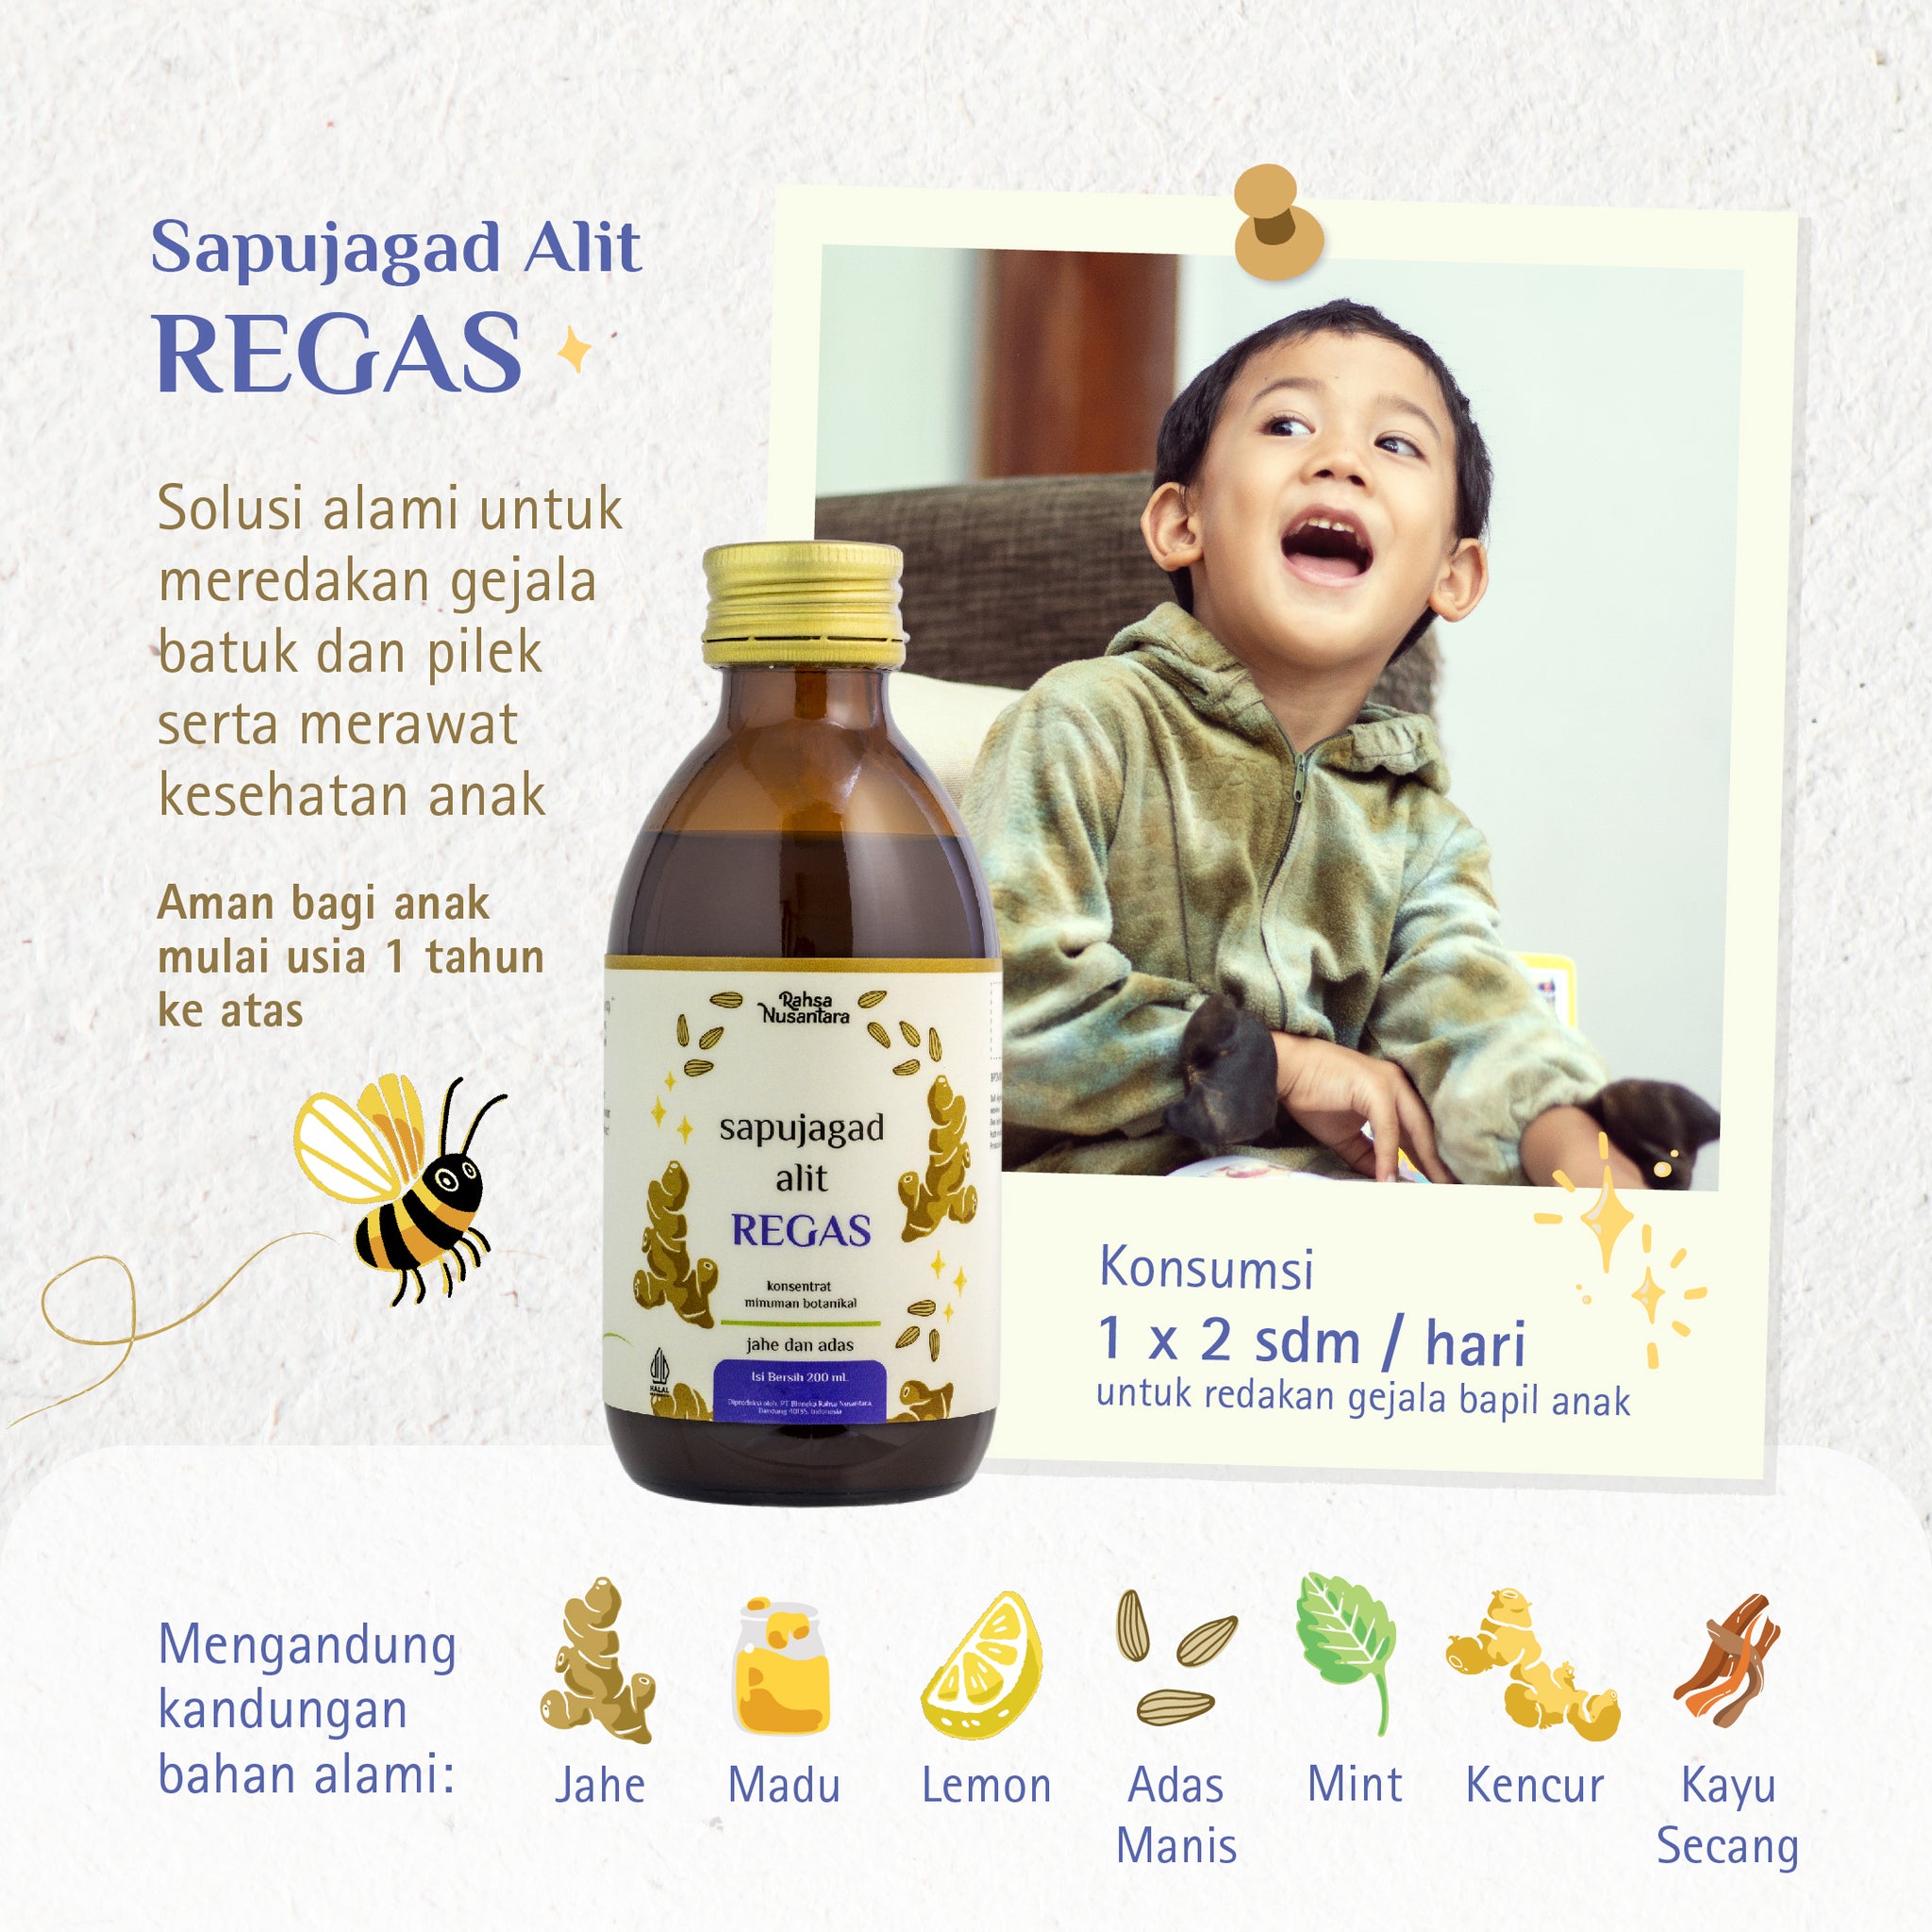 Sapujagad Alit REGAS 200 mL | BPOM - Herbal Alami Flu Batuk Pilek | by Rahsa Nusantara